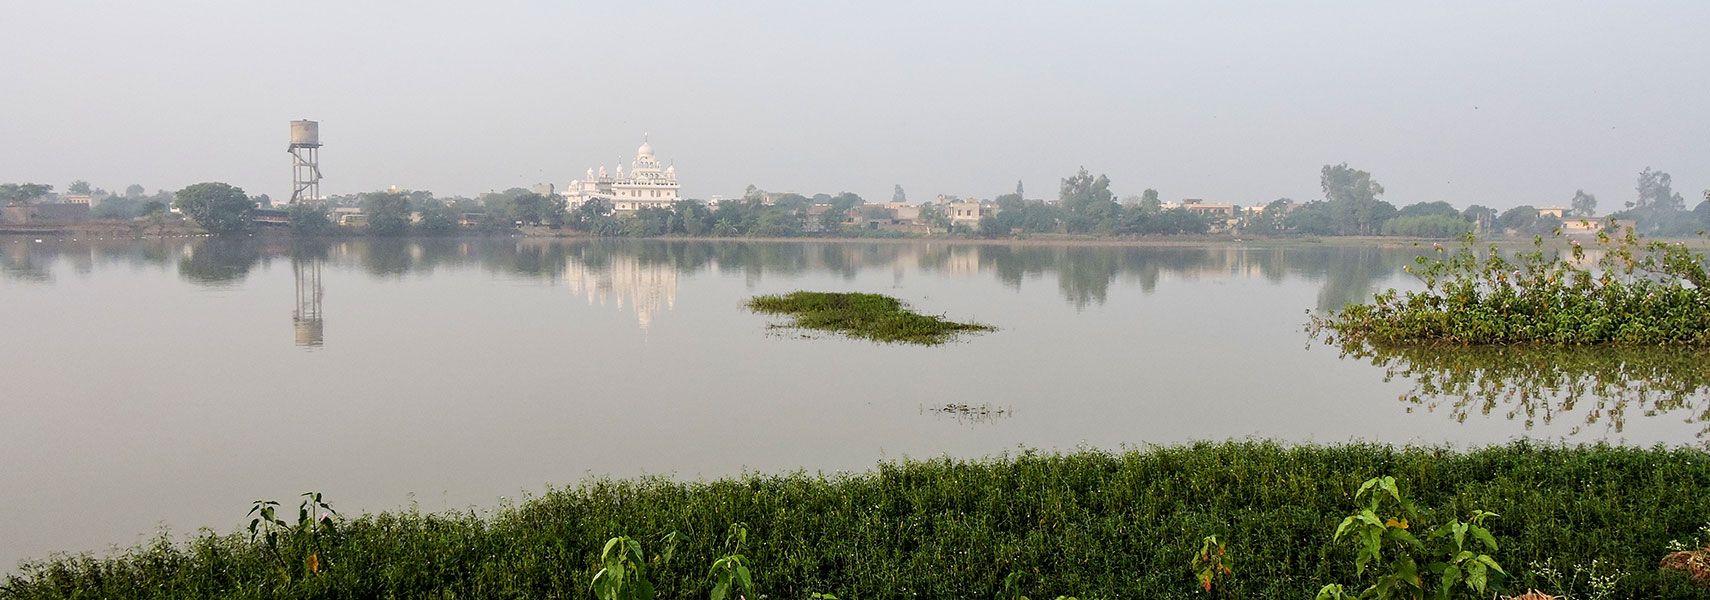 Lake Mote Majra, SAS Nagar, Punjab